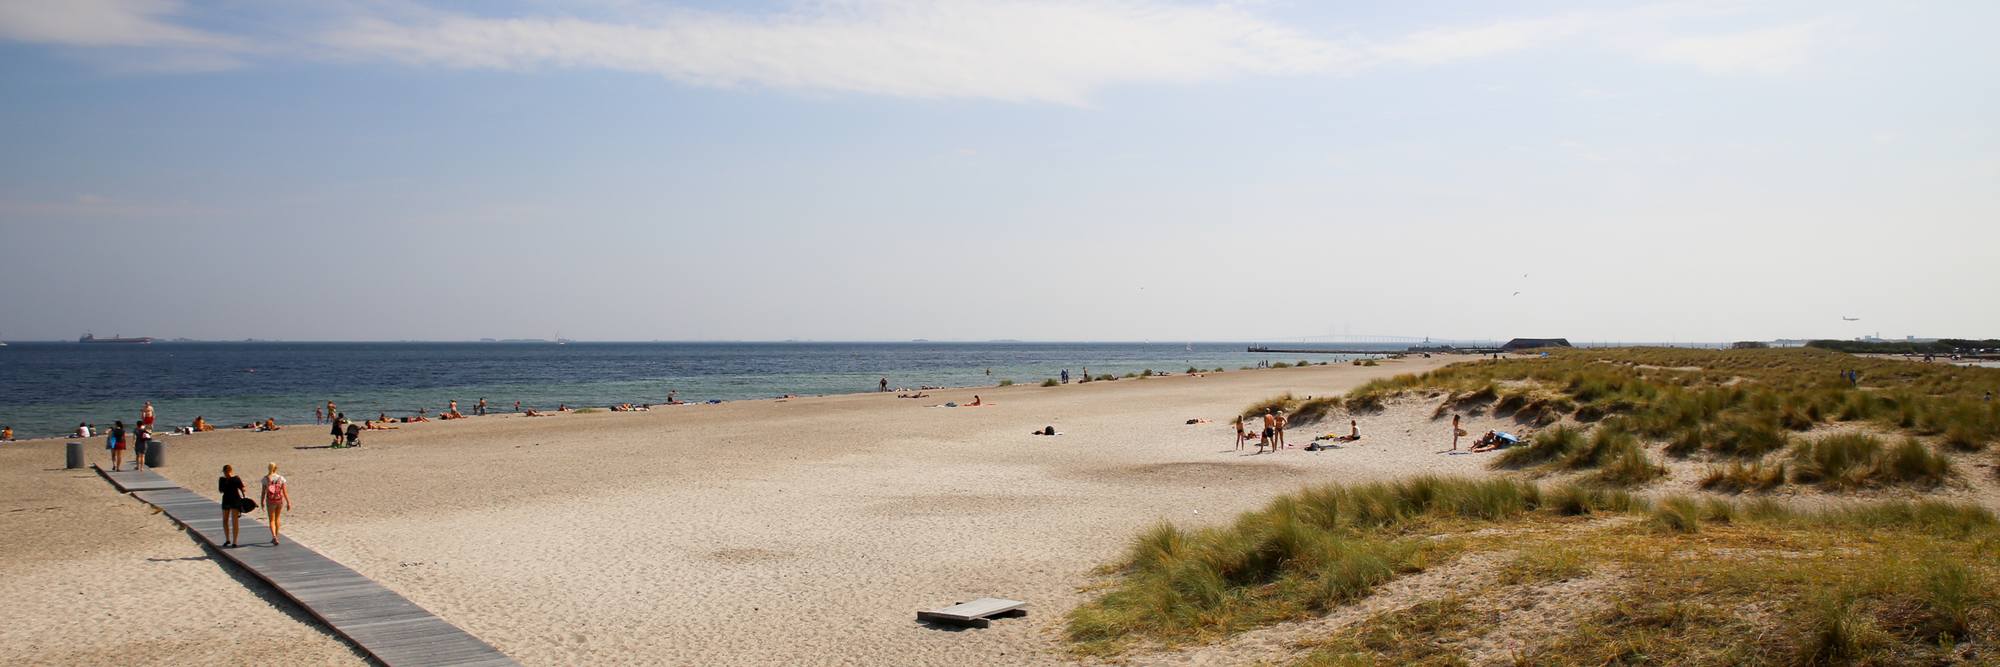 Amager-Strandpark-beach-Copenhagen-sunny-day